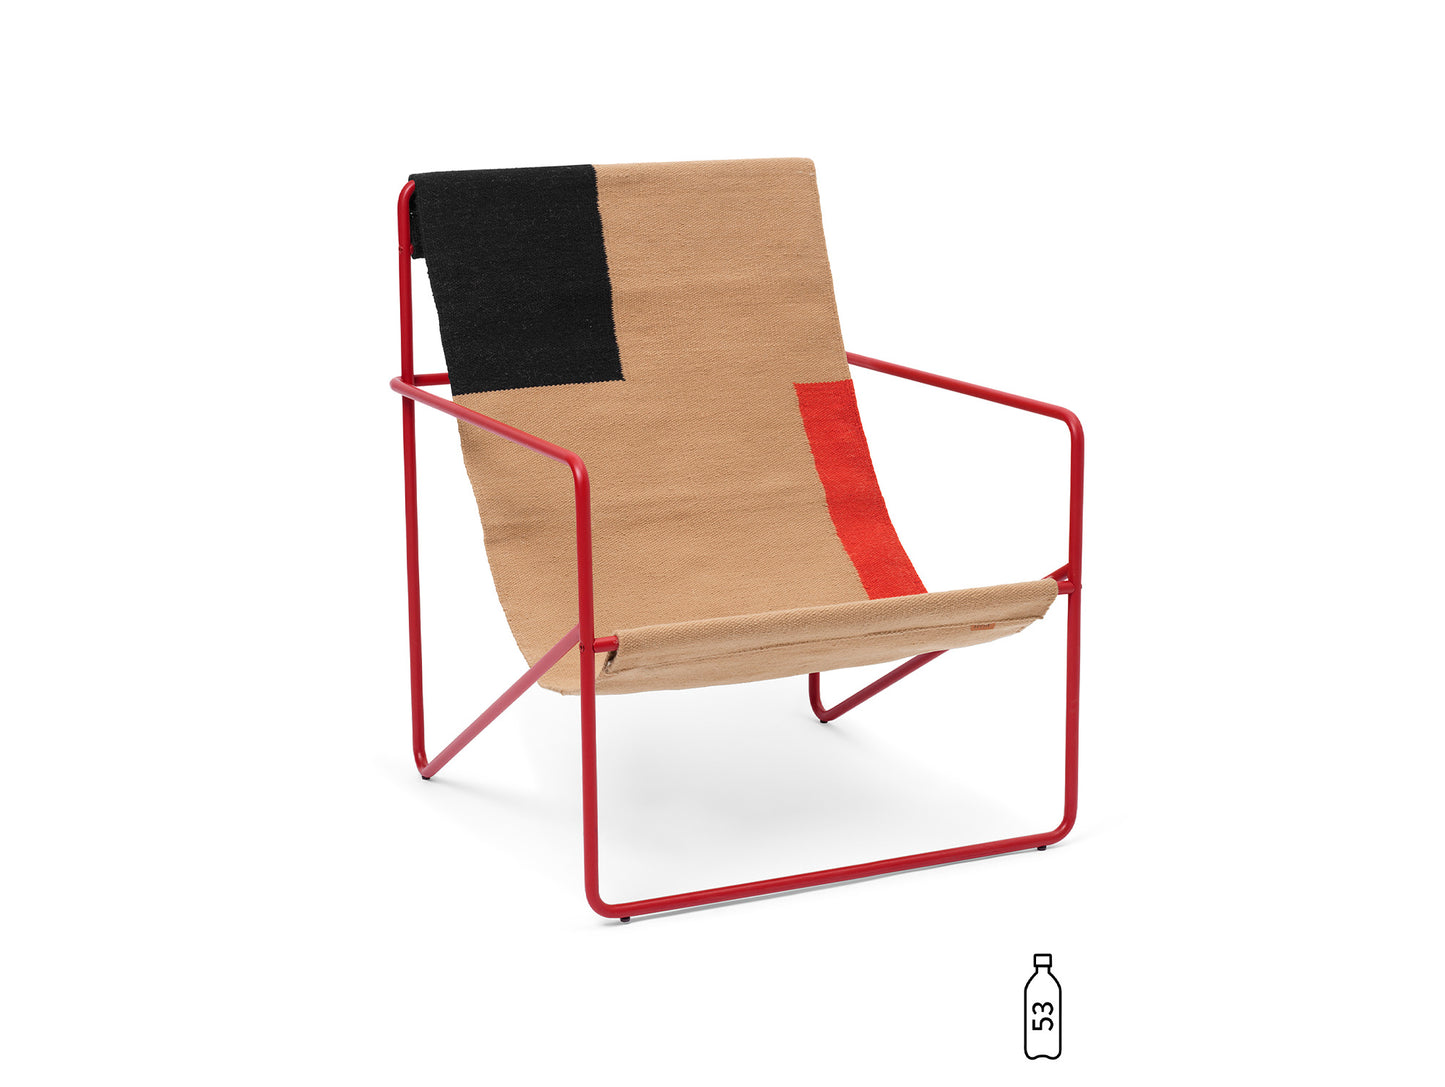 Desert Chair by Ferm Living - Block / Poppy Red Frame